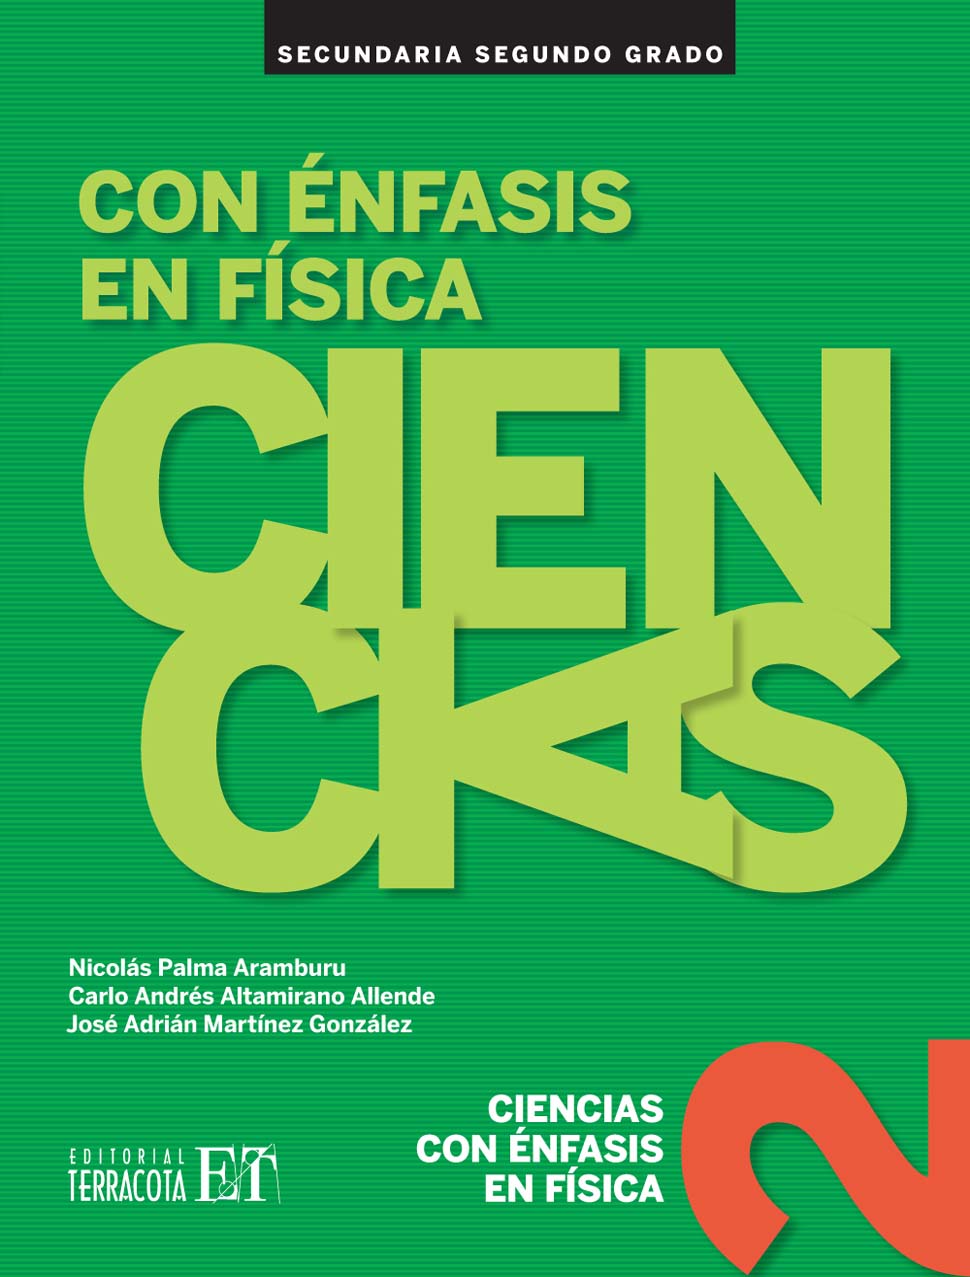 Ciencias 2 con énfasis en Física, Editorial: Terracota, Nivel: Secundaria, Grado: 2